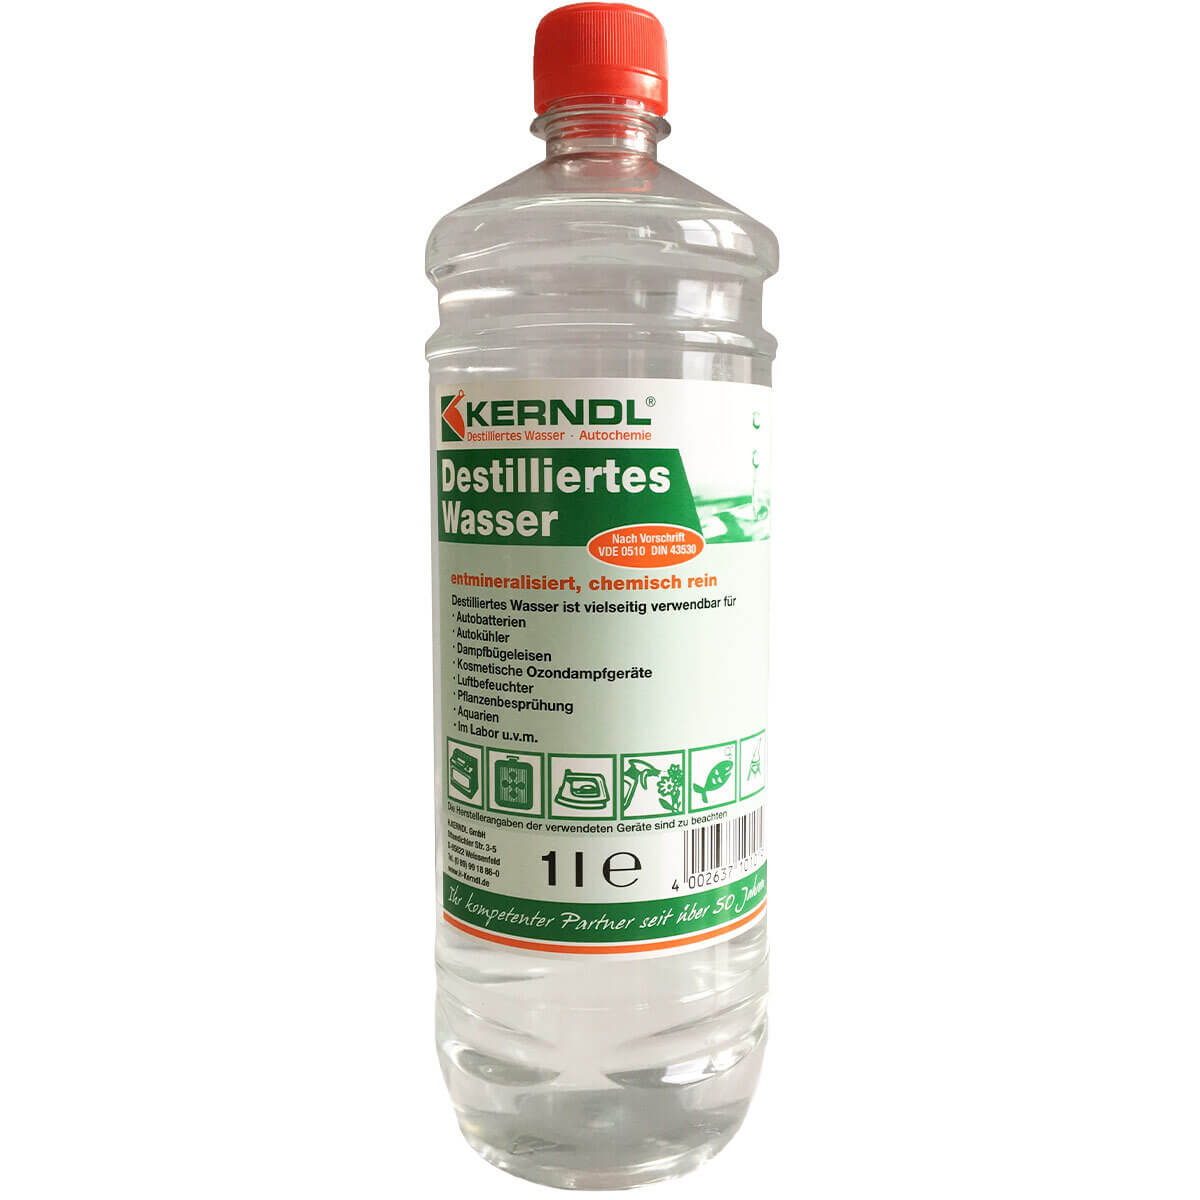 Kerndl Distilled water